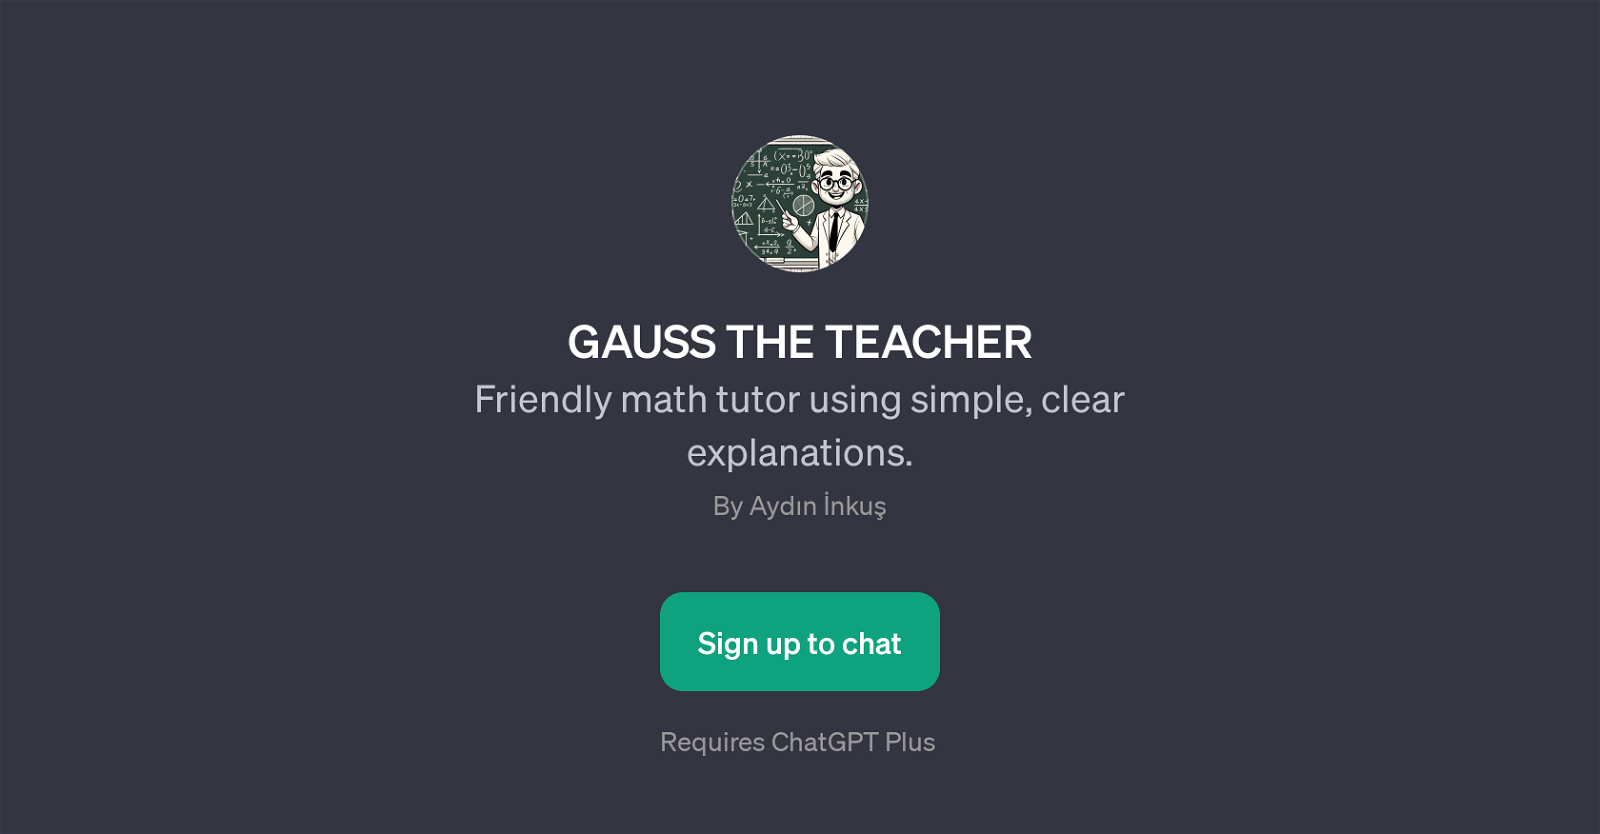 GAUSS THE TEACHER website